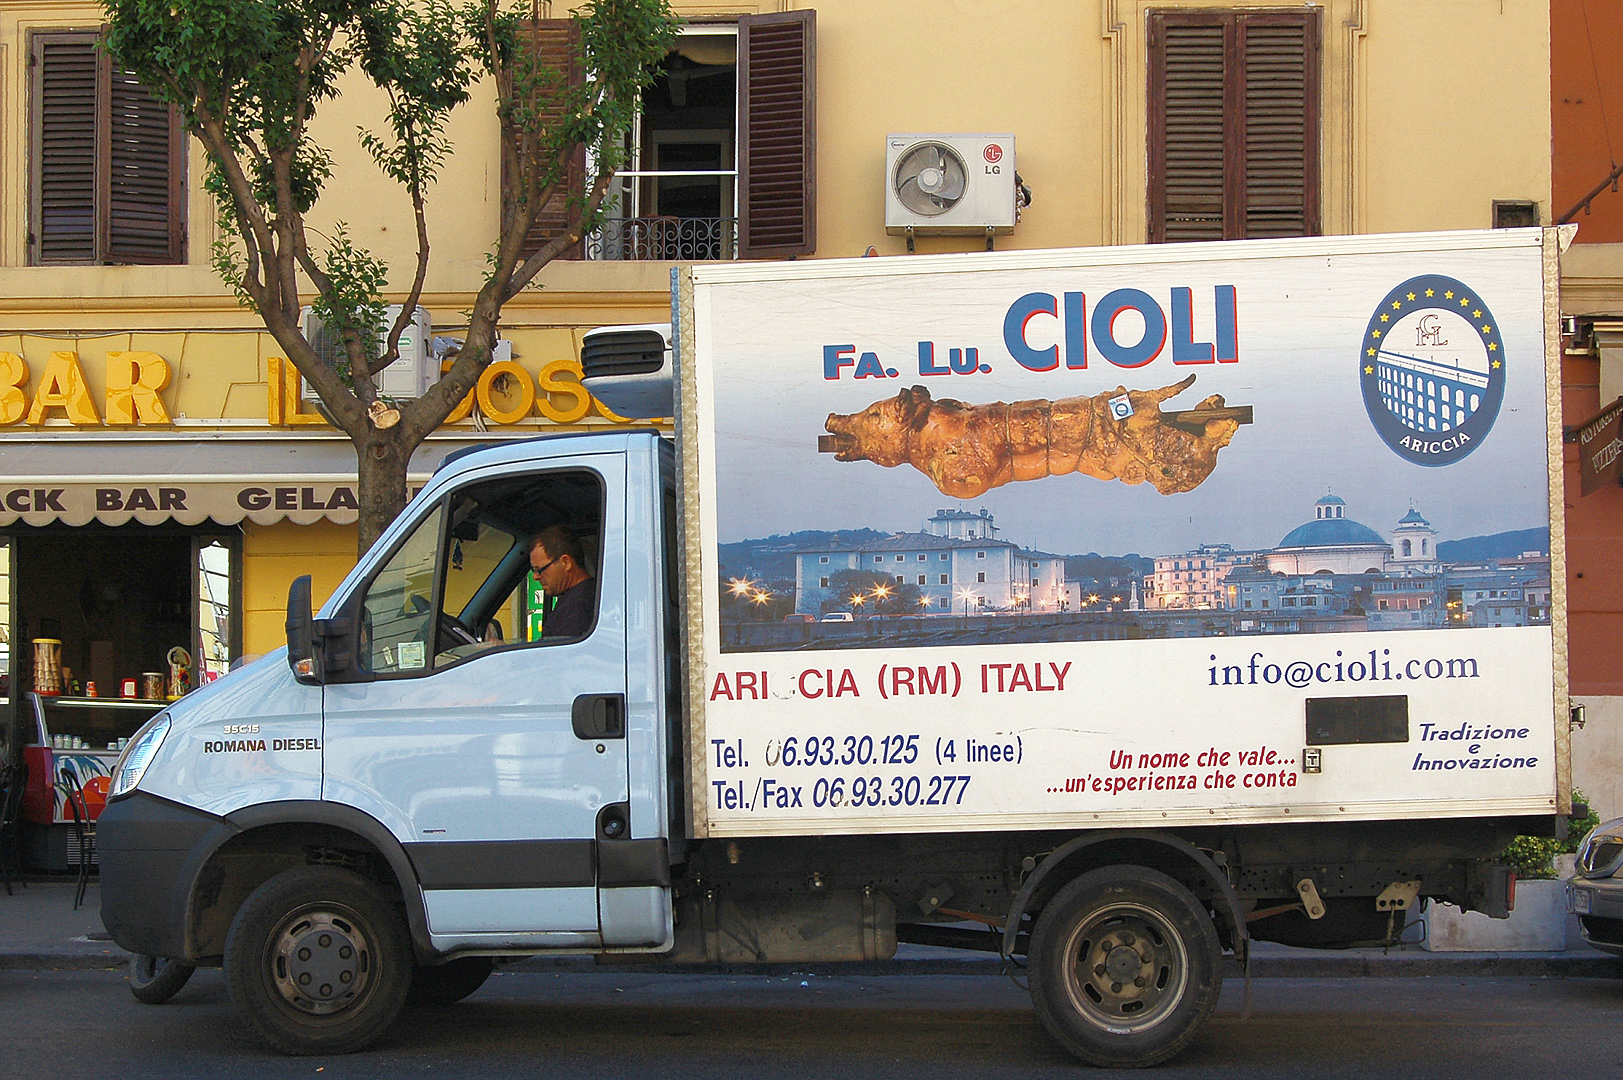 Vrachtwagen met Porchetta, Lorry carrying porchetta